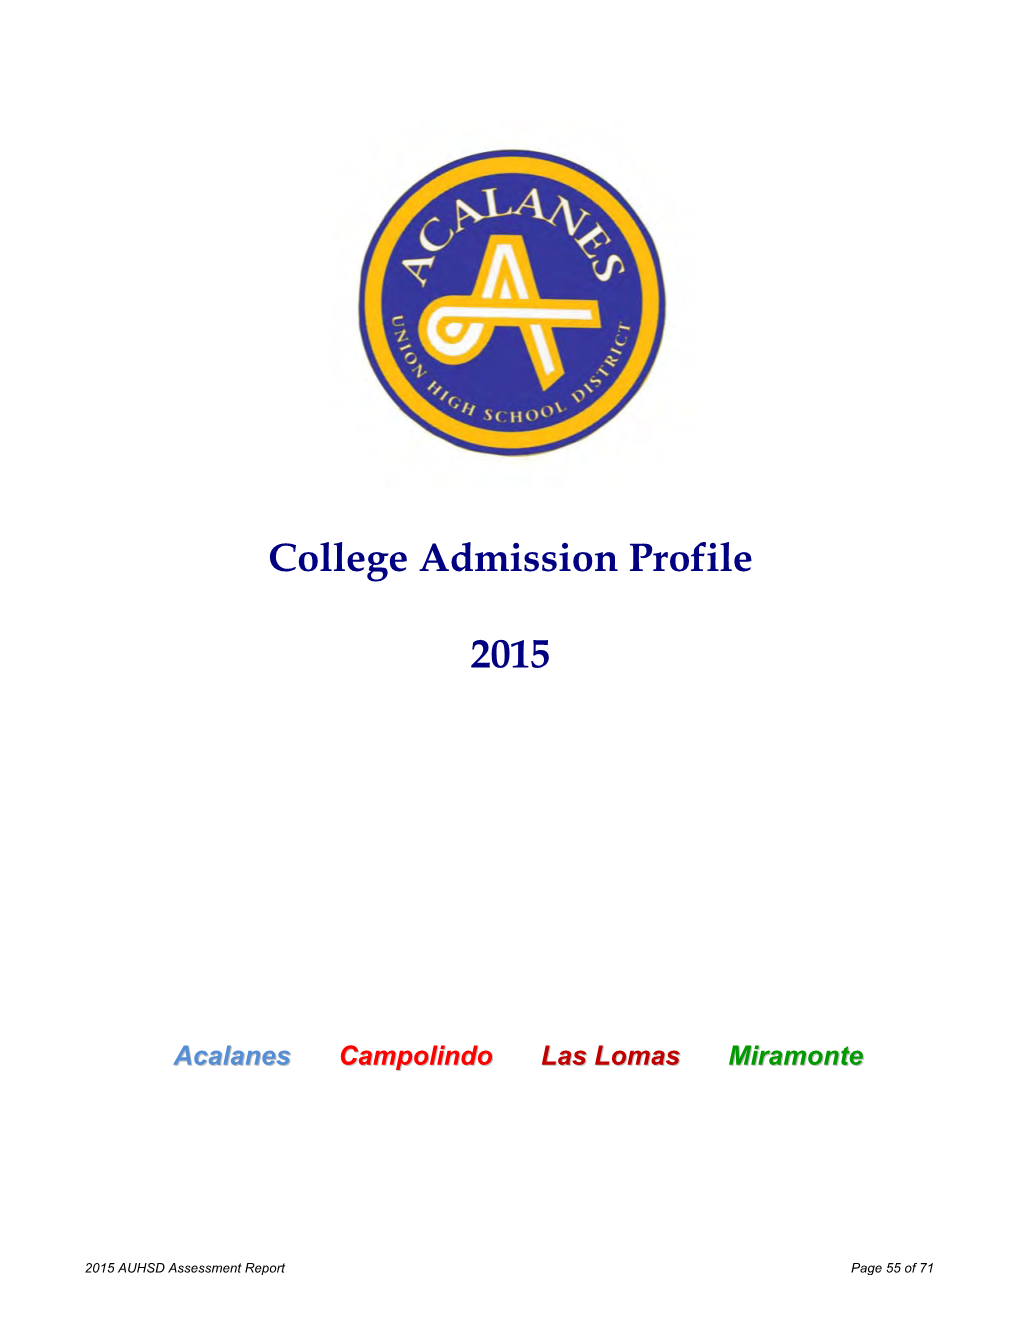 College Admission Profile 2015